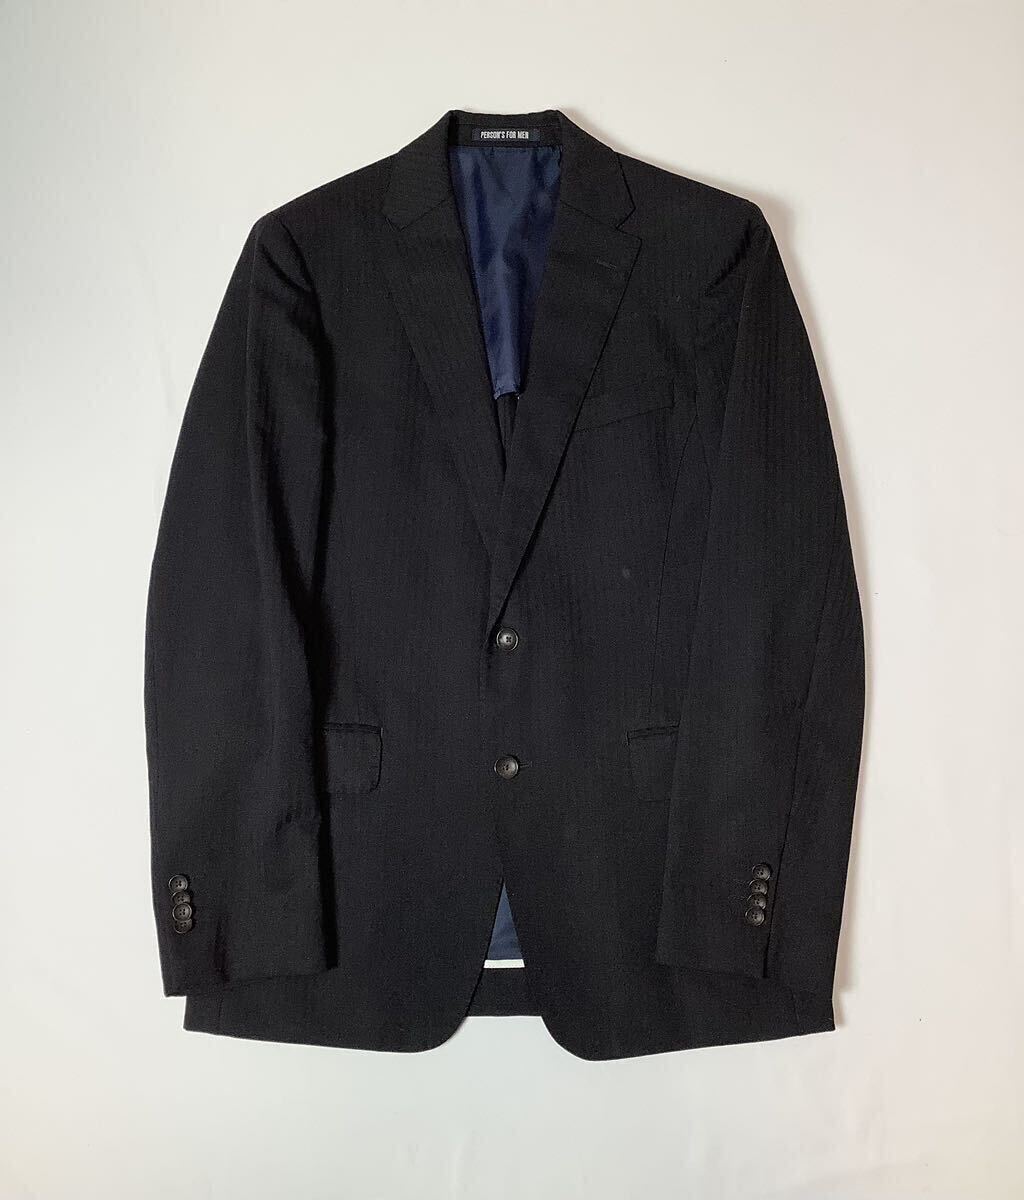 PERSON'S FOR MEN // 背抜き 長袖 シャドーストライプ柄 シングル スーツ (黒) サイズ 90YA5 (M)の画像2